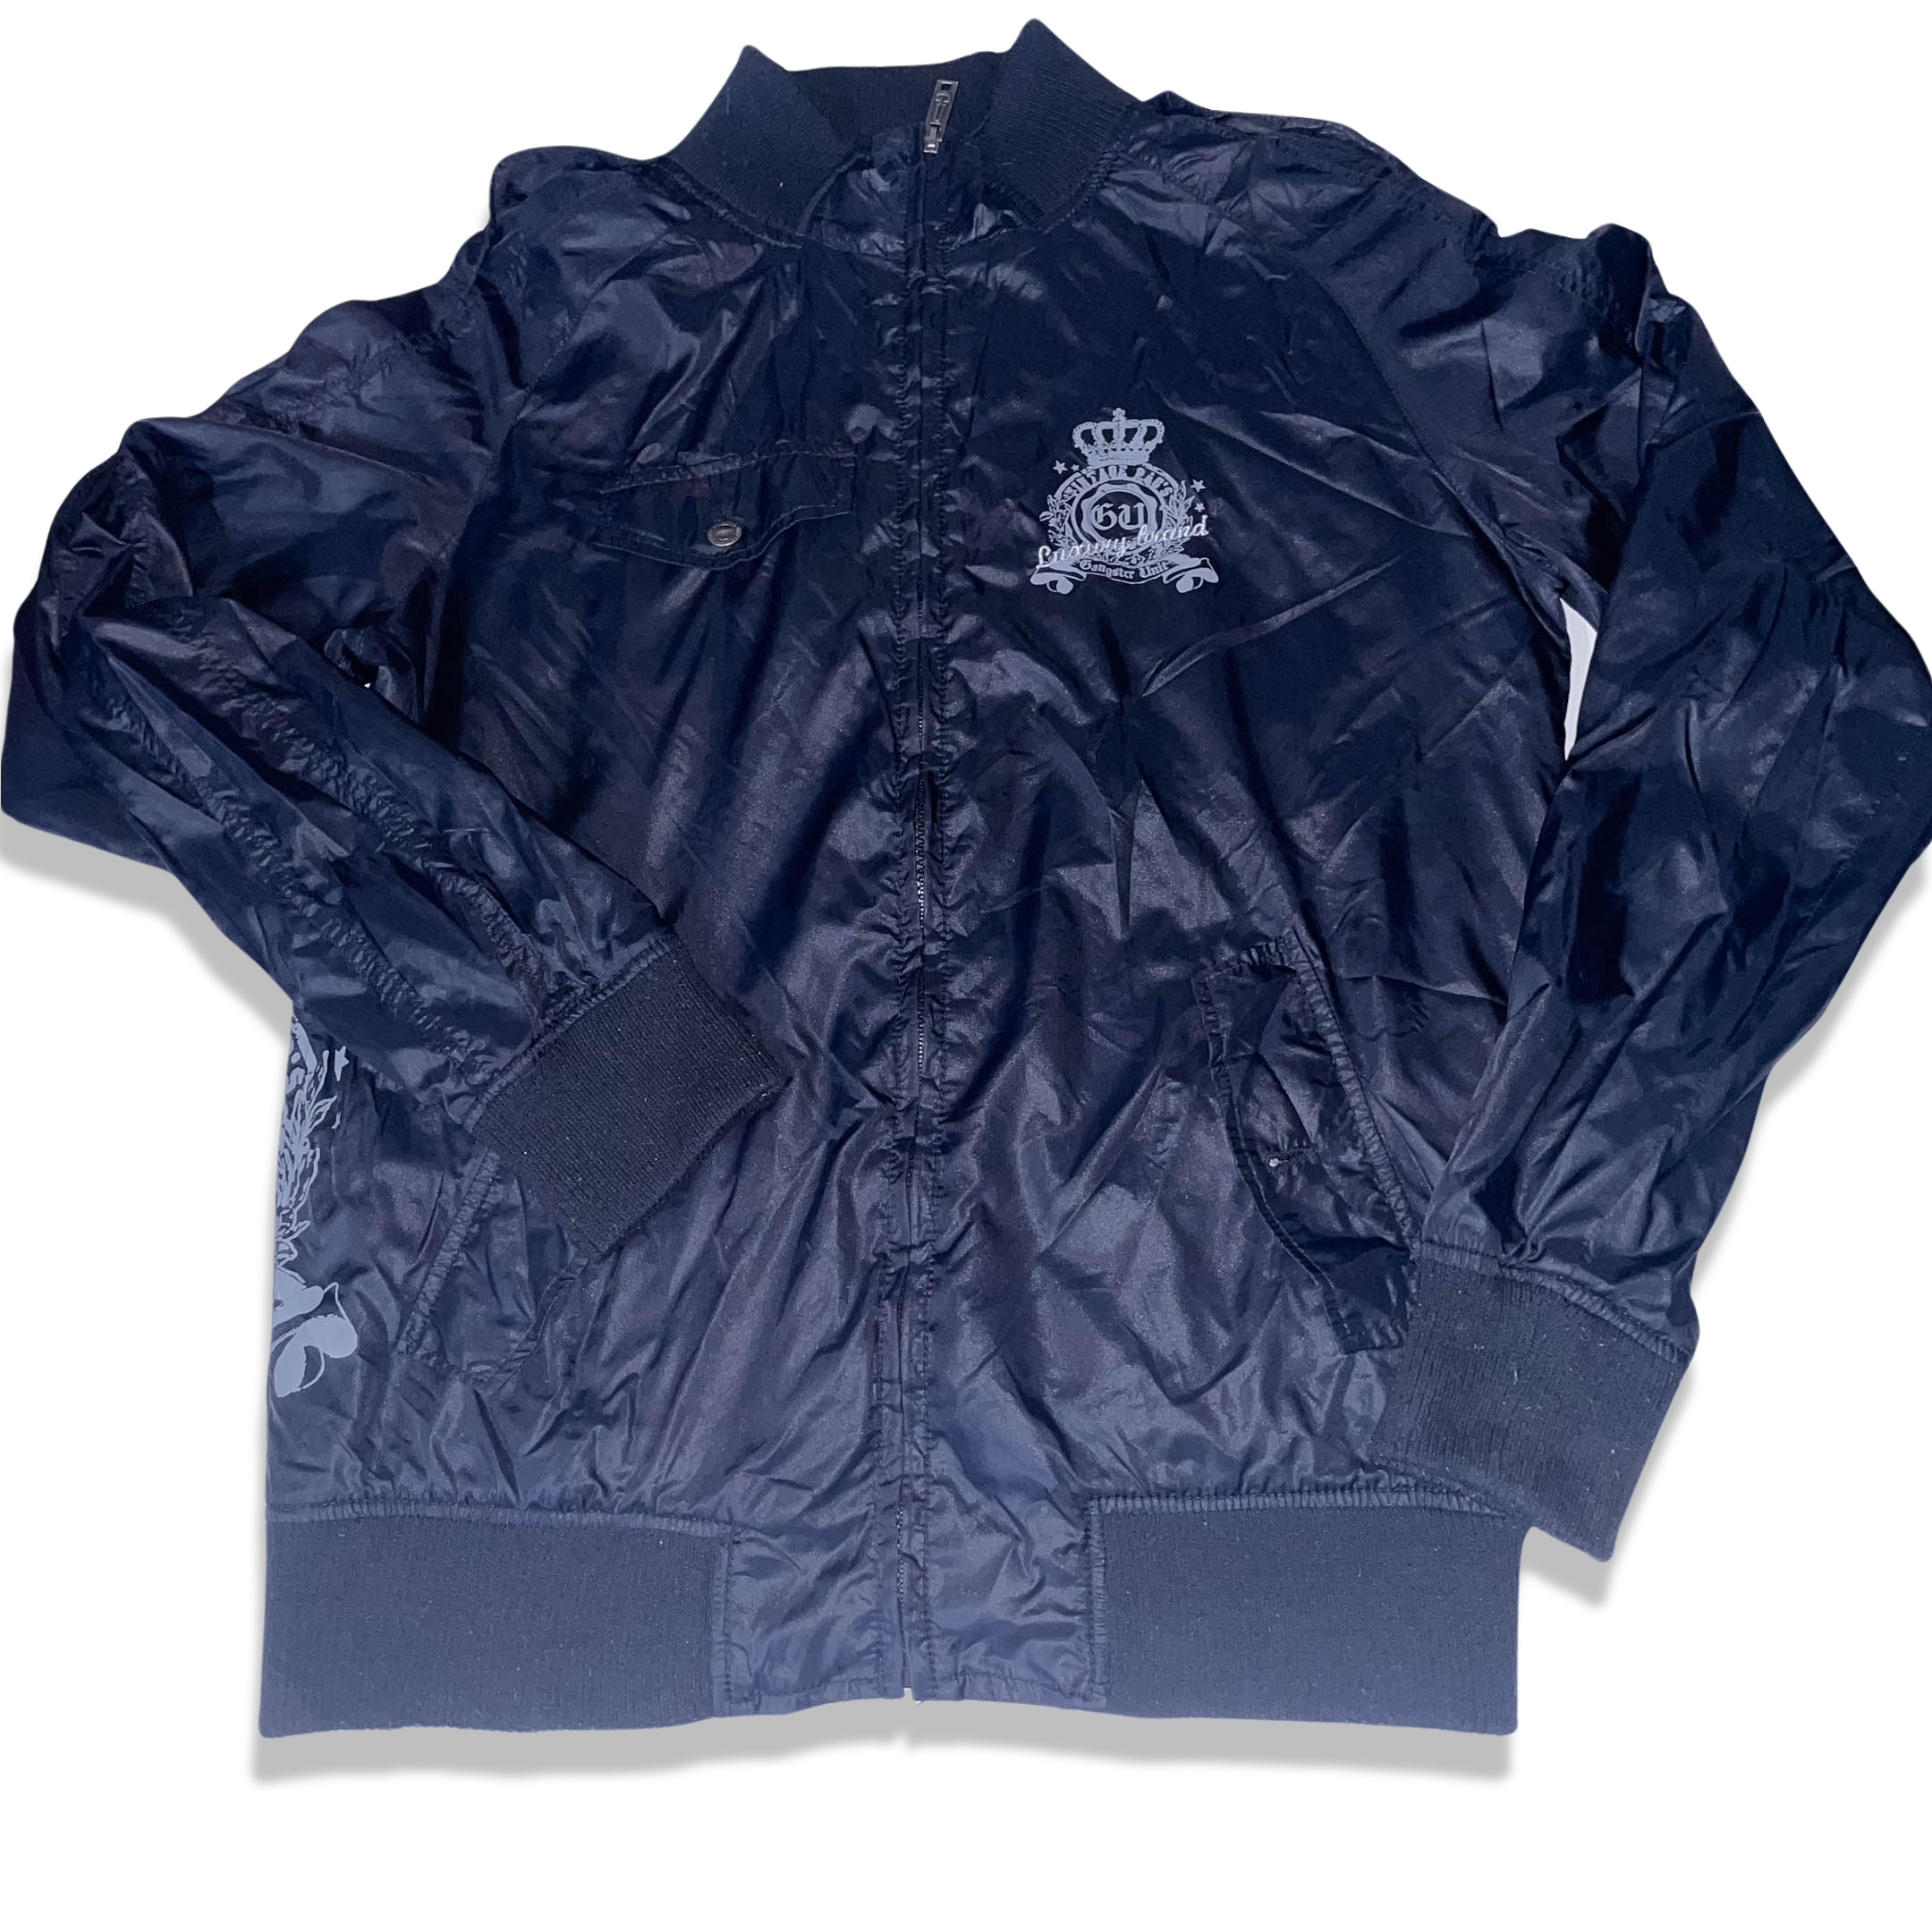 Vintage Gangster Unit since 1983 black medium full zip up leather jacket